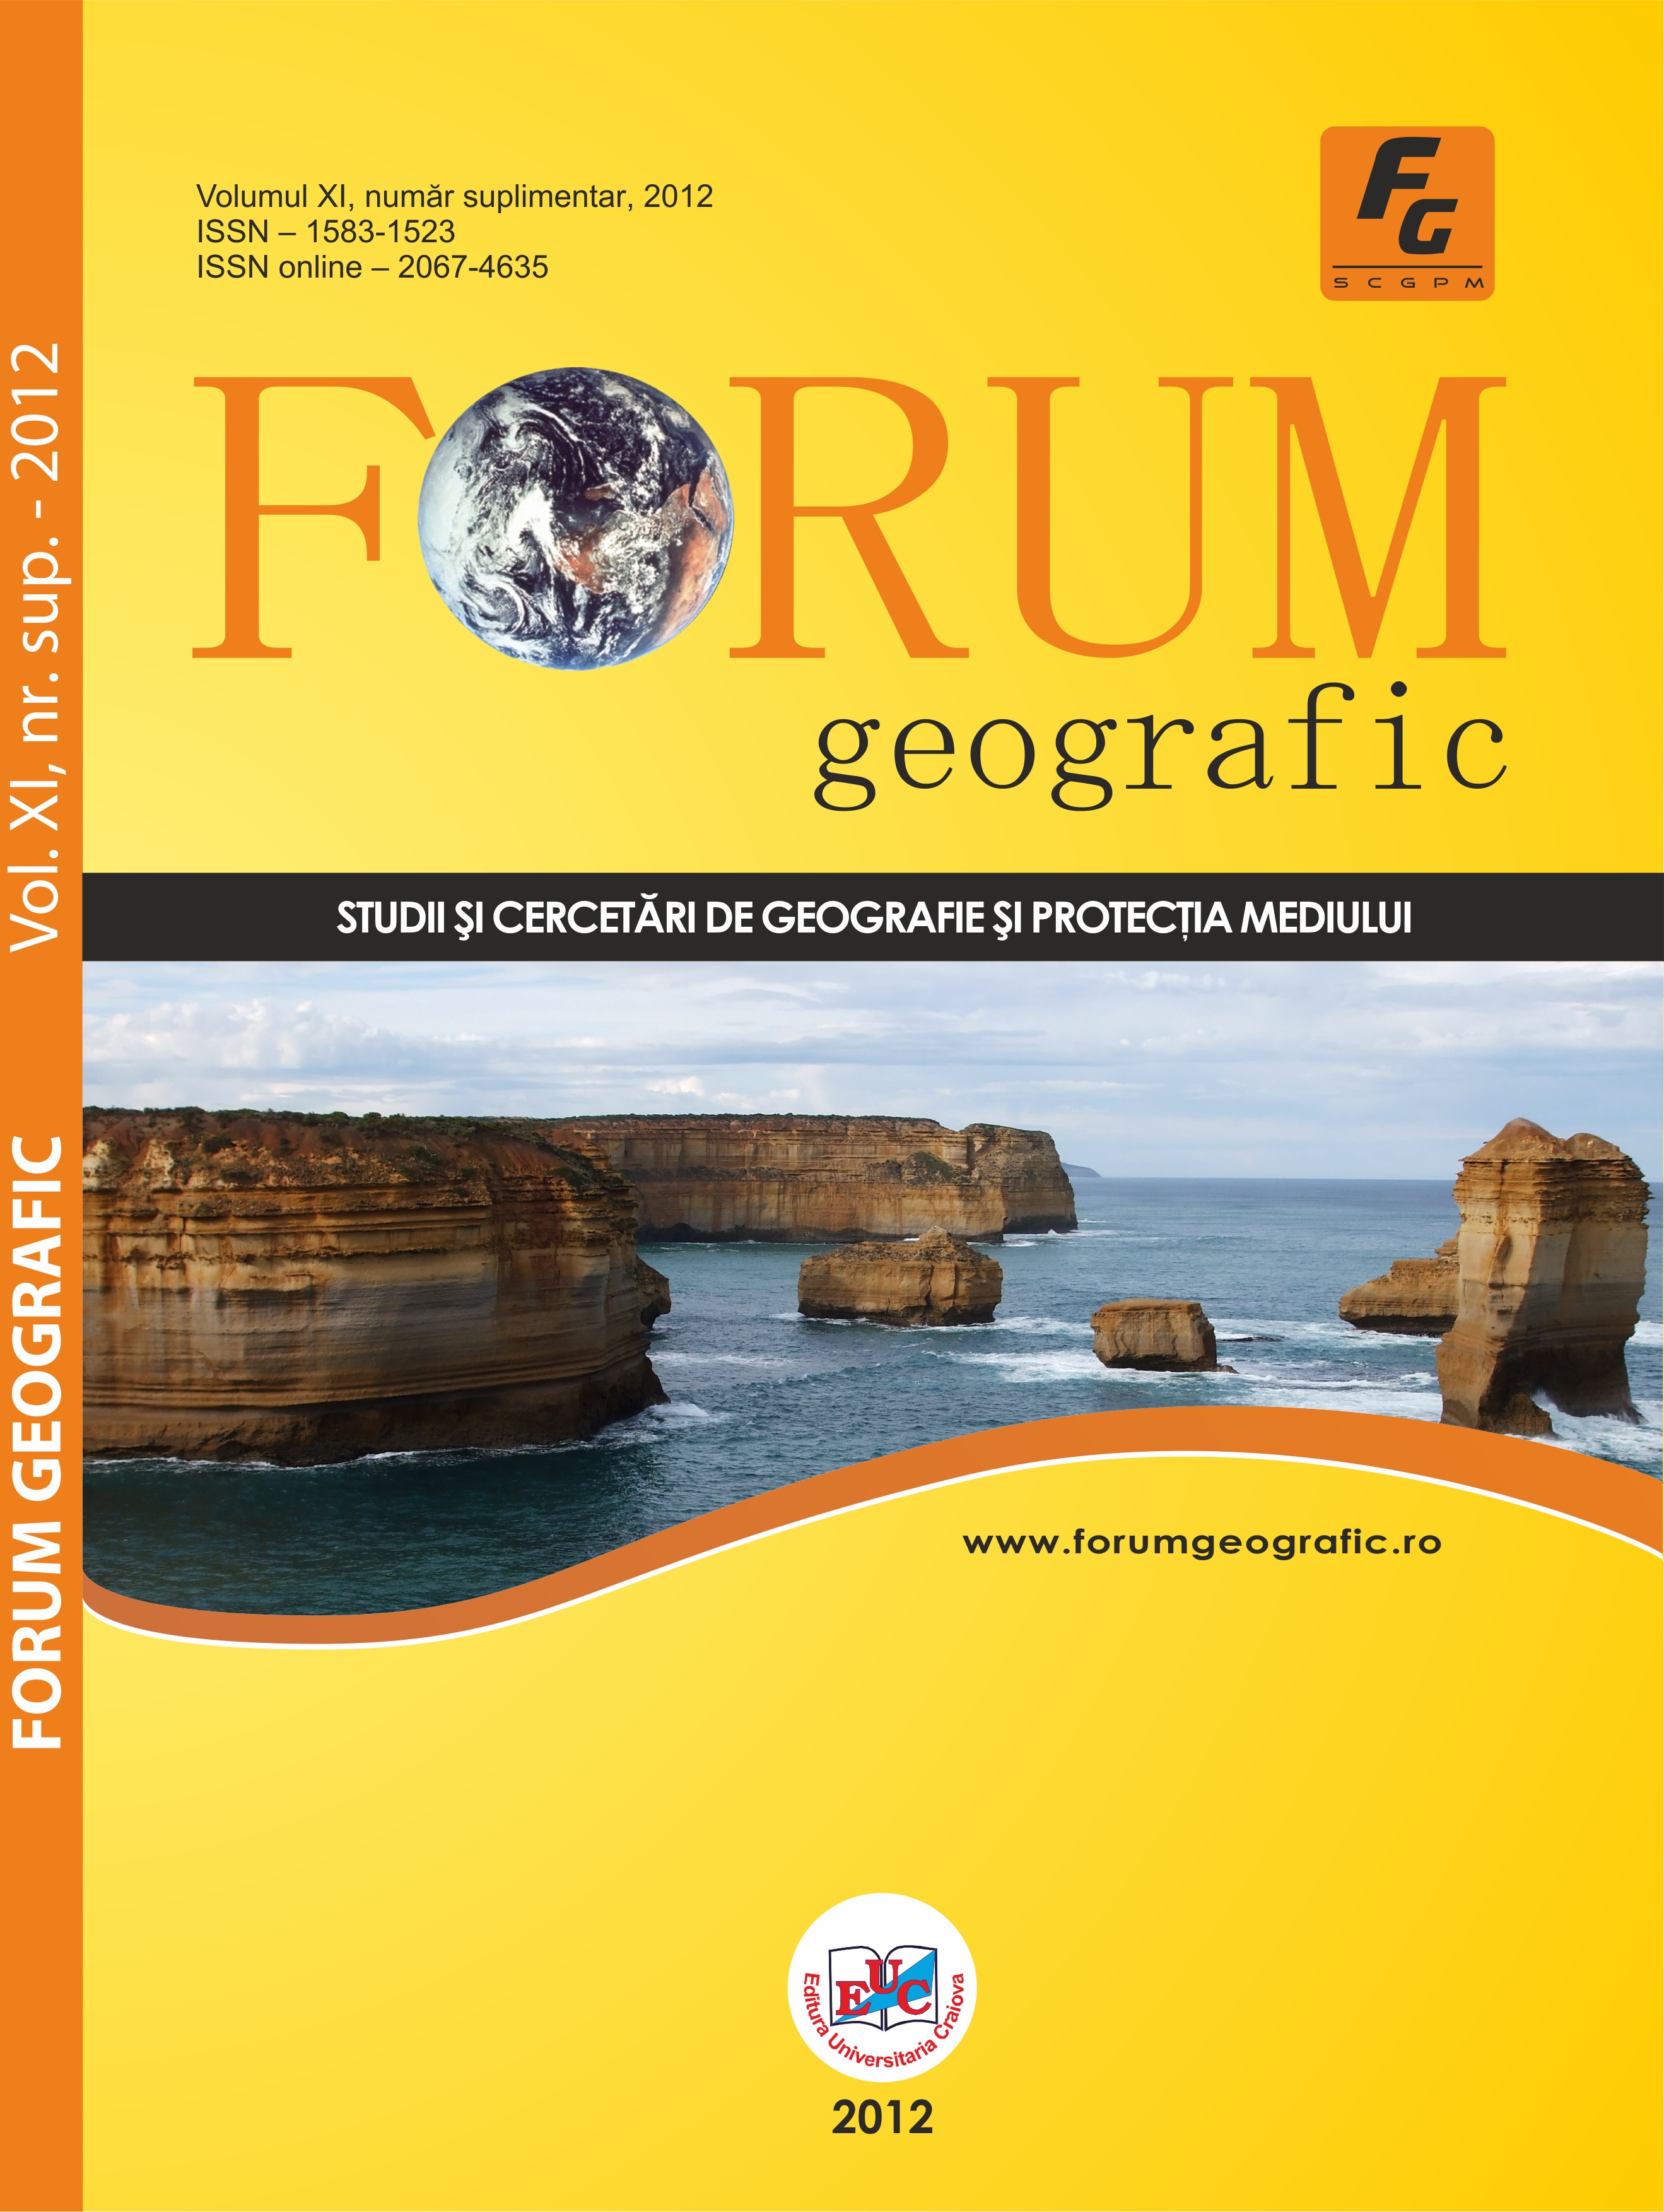 Forum geografic: Volum XI, supliment 1